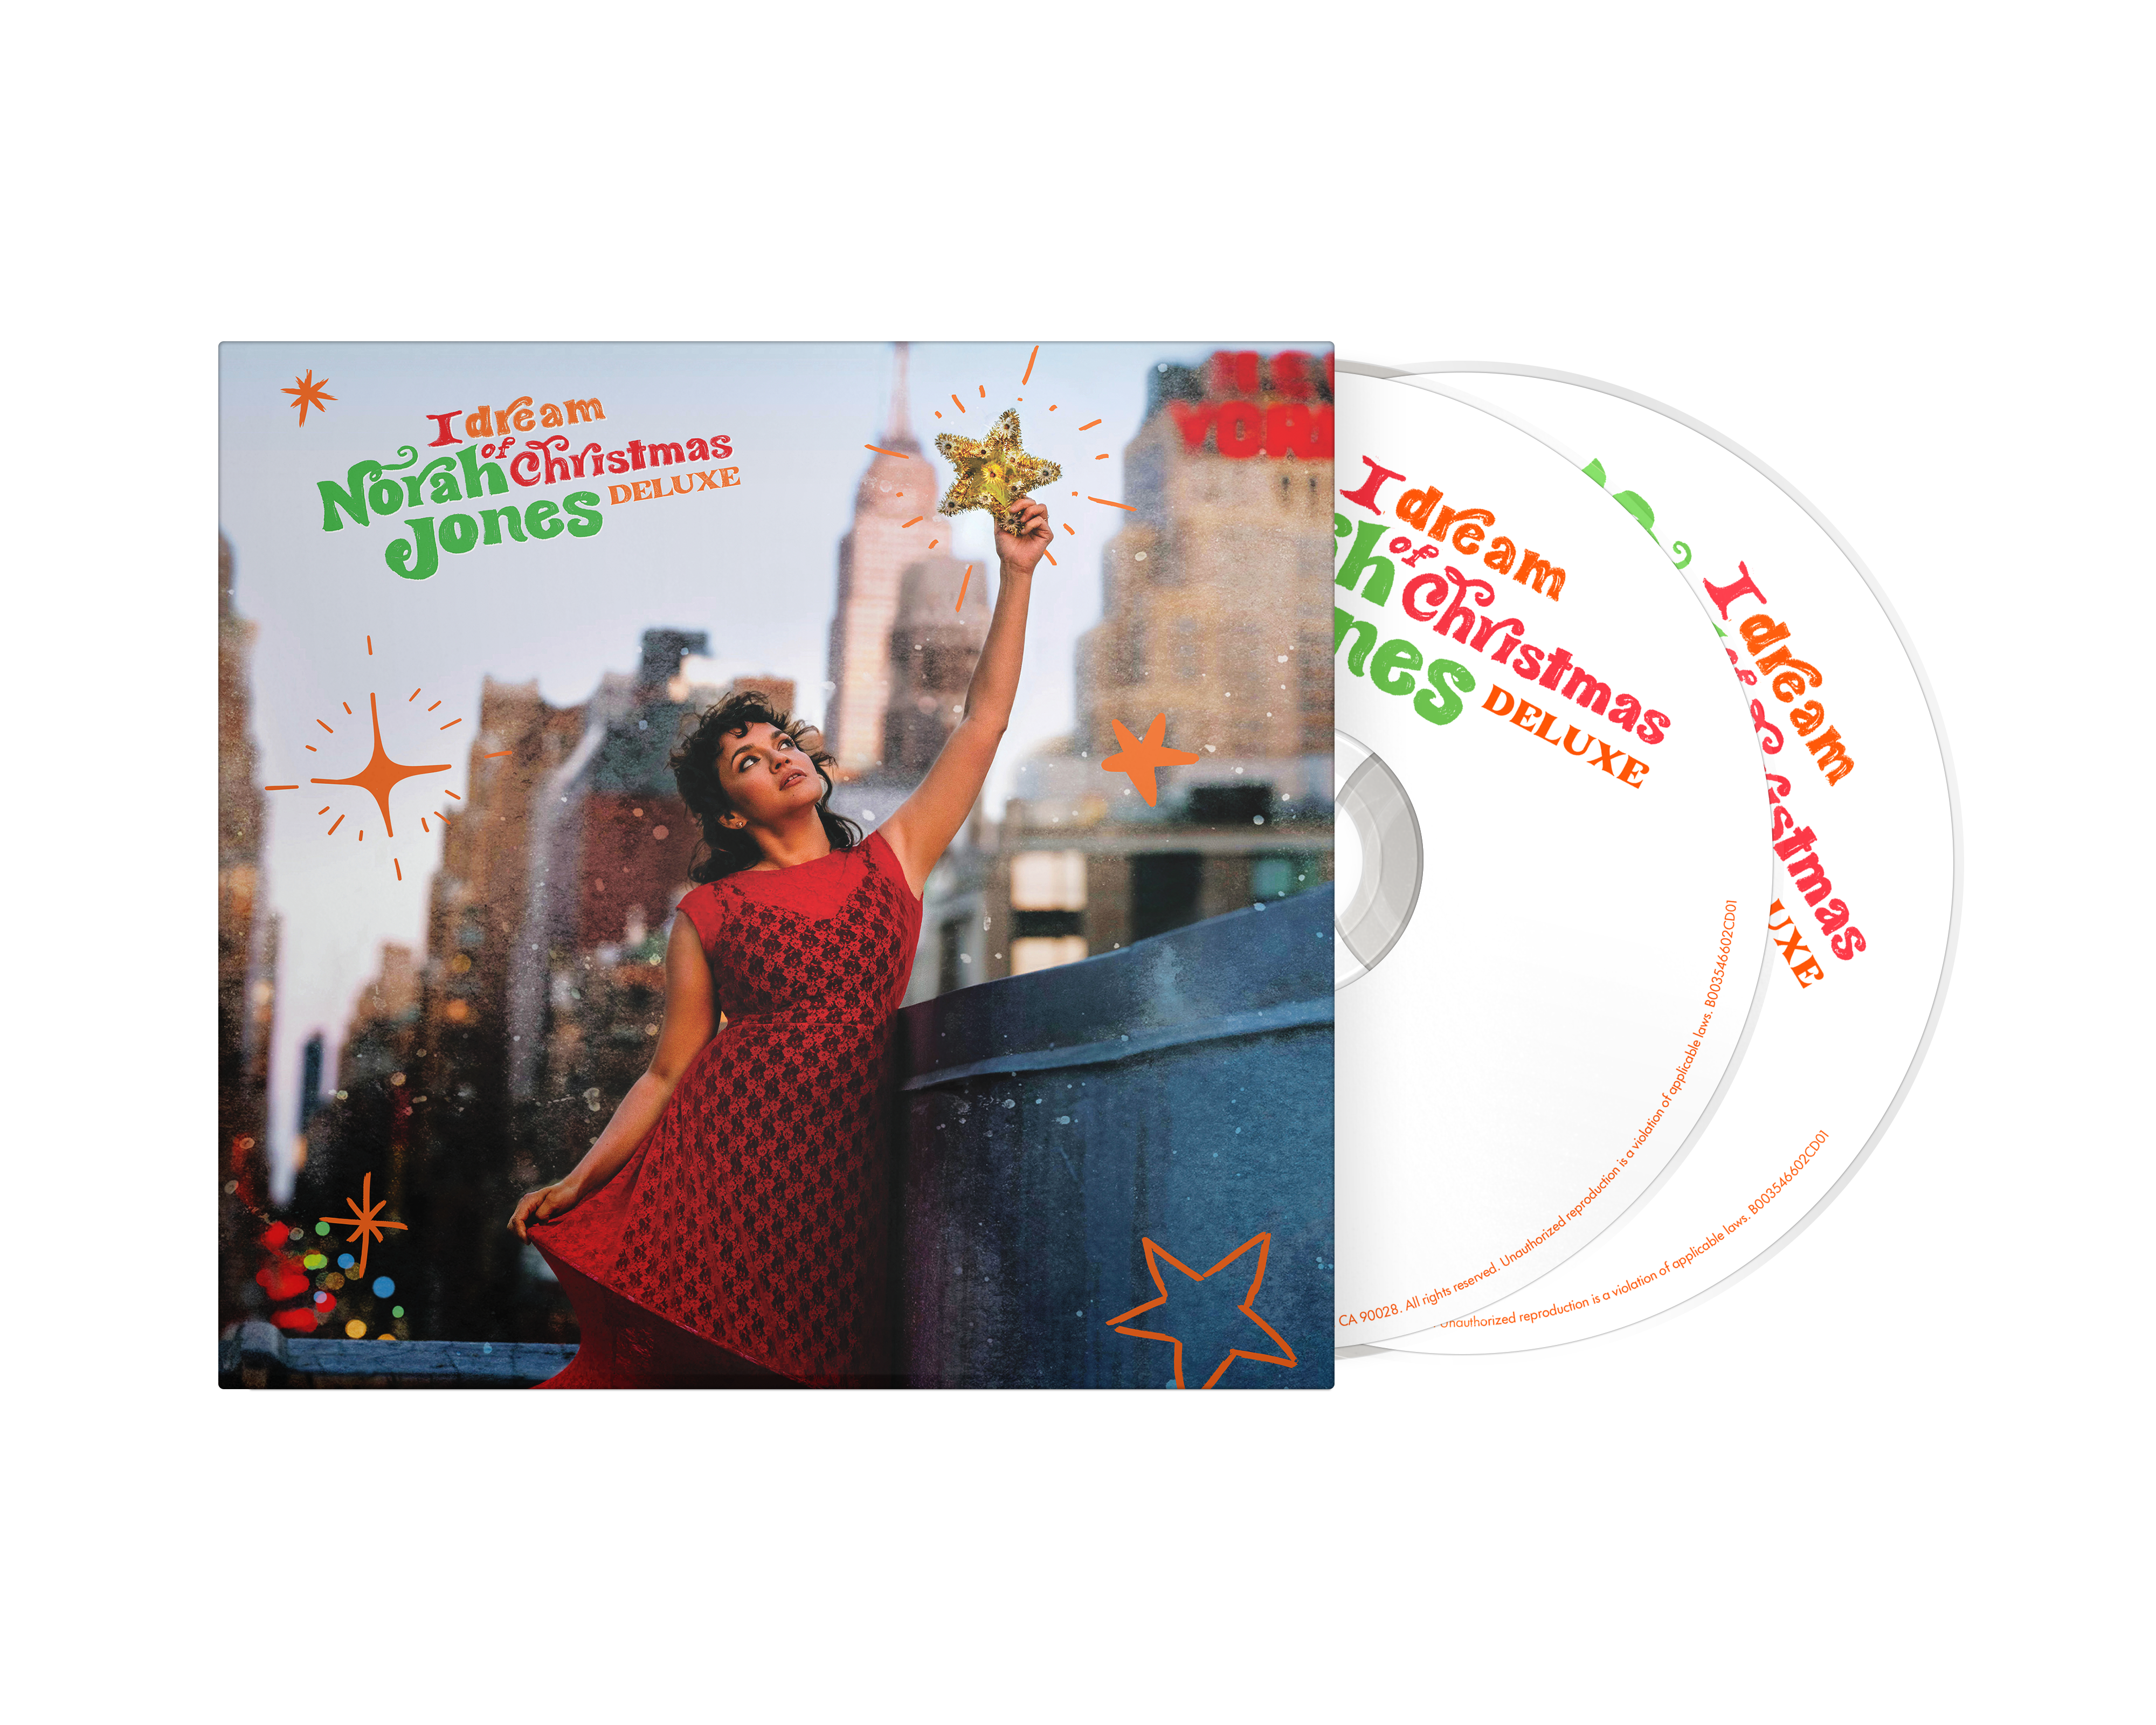 Norah Jones - I Dream Of Christmas Deluxe CD